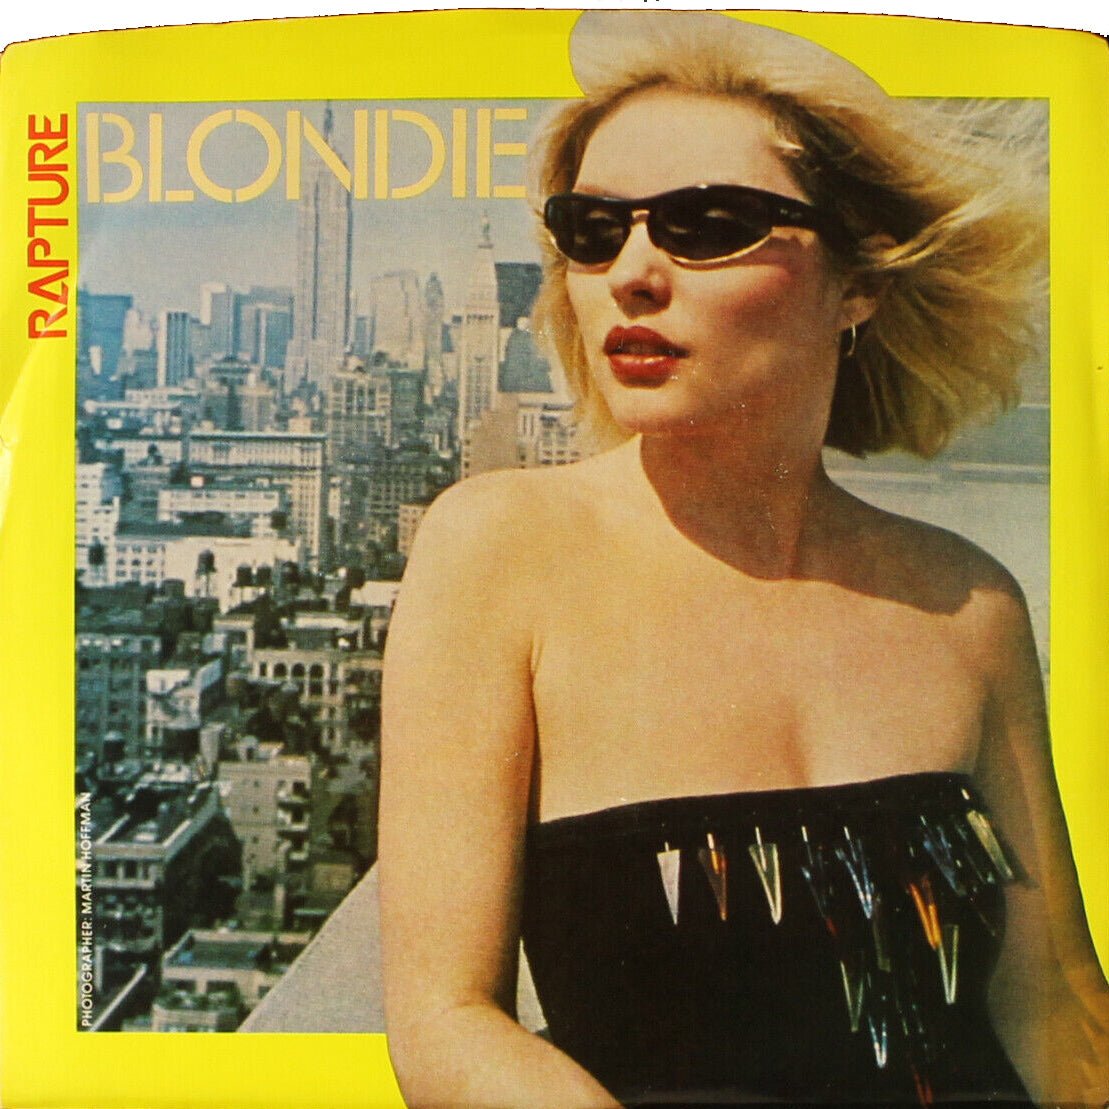 Blondie - Rapture 7" Vinyl